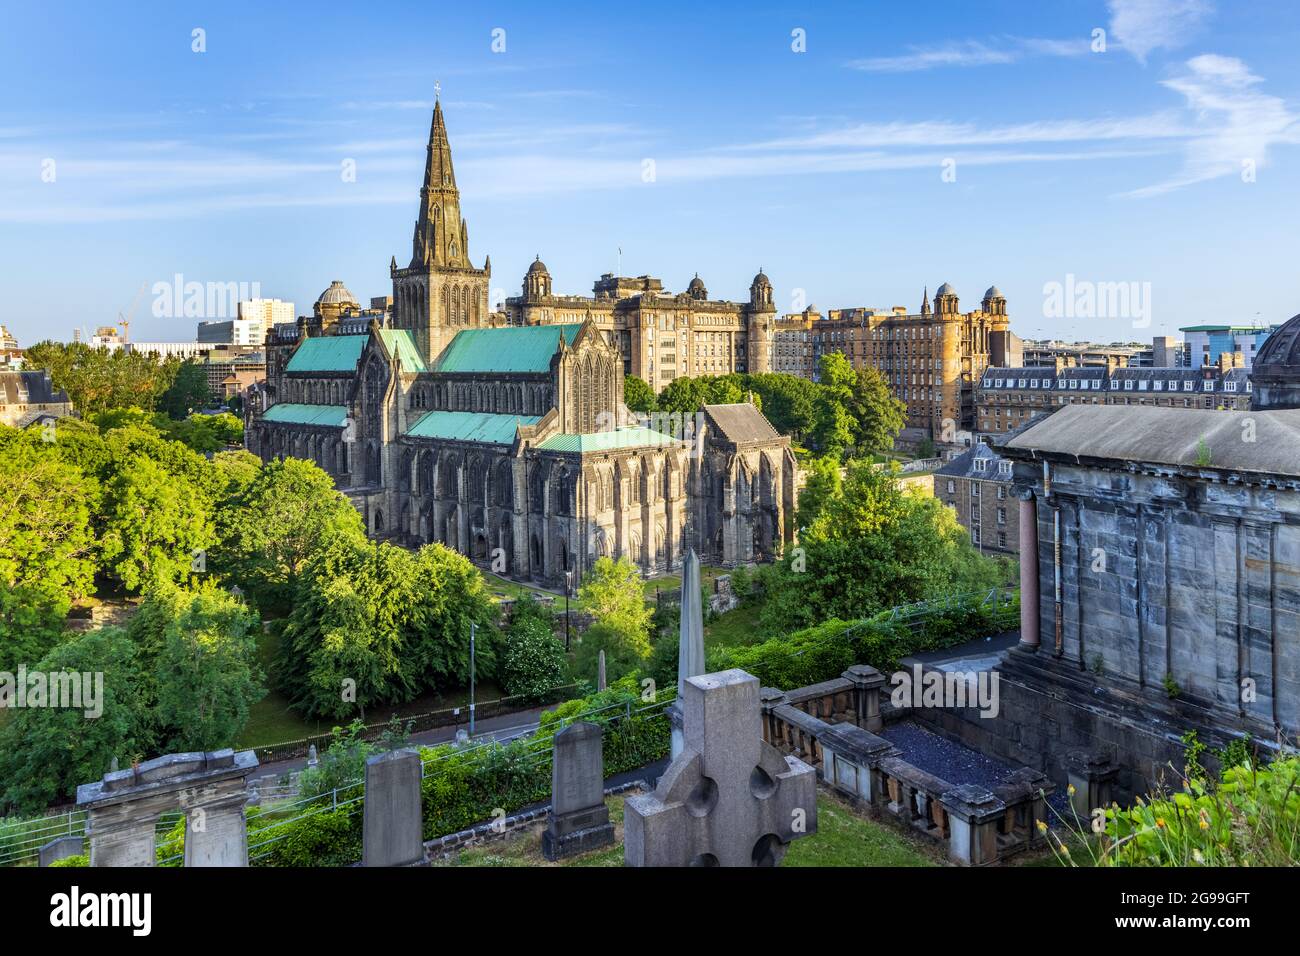 Glasgow Cathedral, die älteste Kathedrale auf dem schottischen Festland, und die Old Royal Infirmary, vom viktorianischen Friedhof Nekropolis. Stockfoto